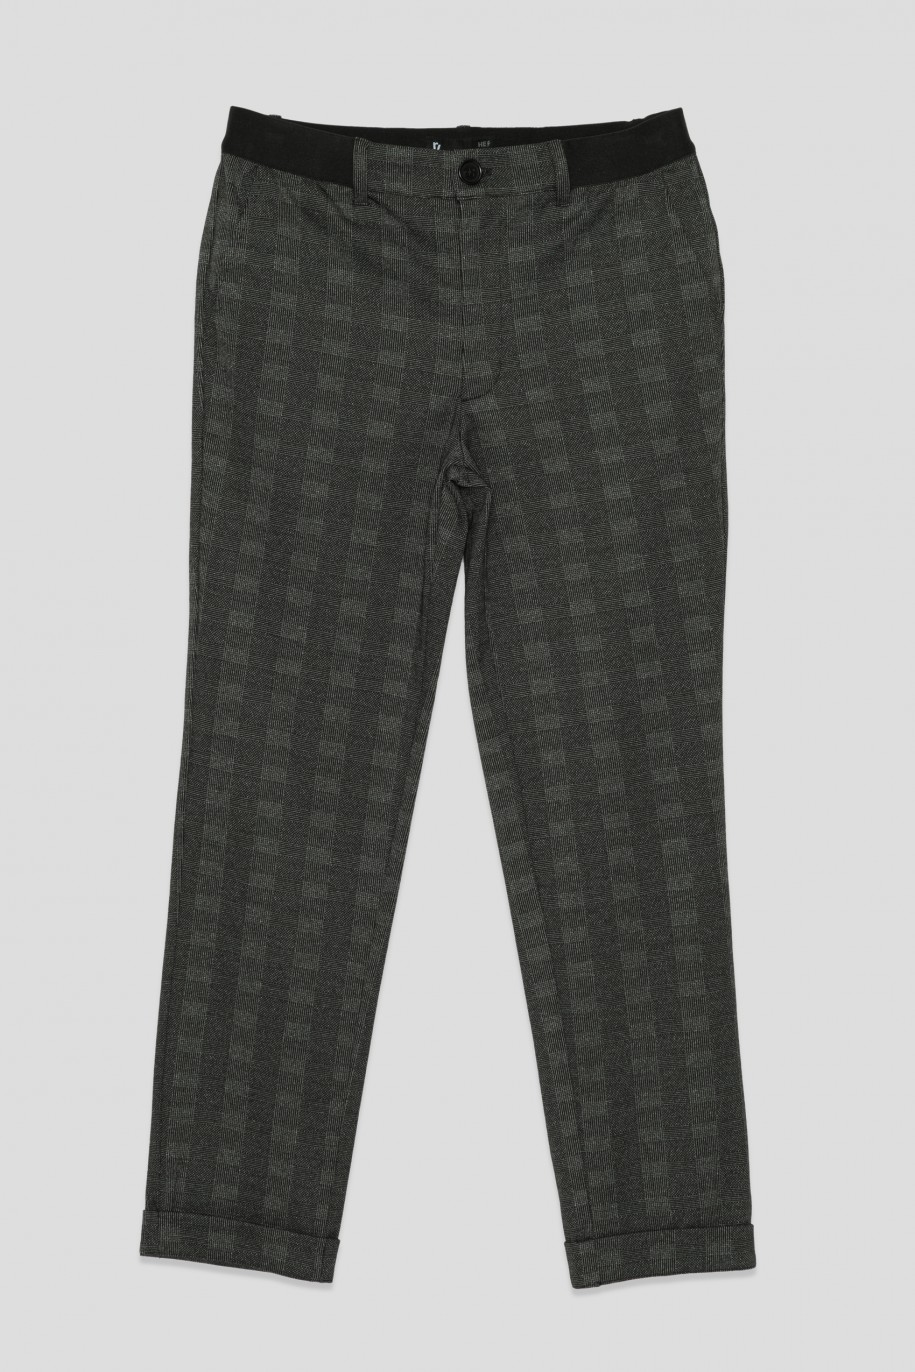 Eleganckie spodnie z dzianiny żakardowej dla chłopaka - 33599